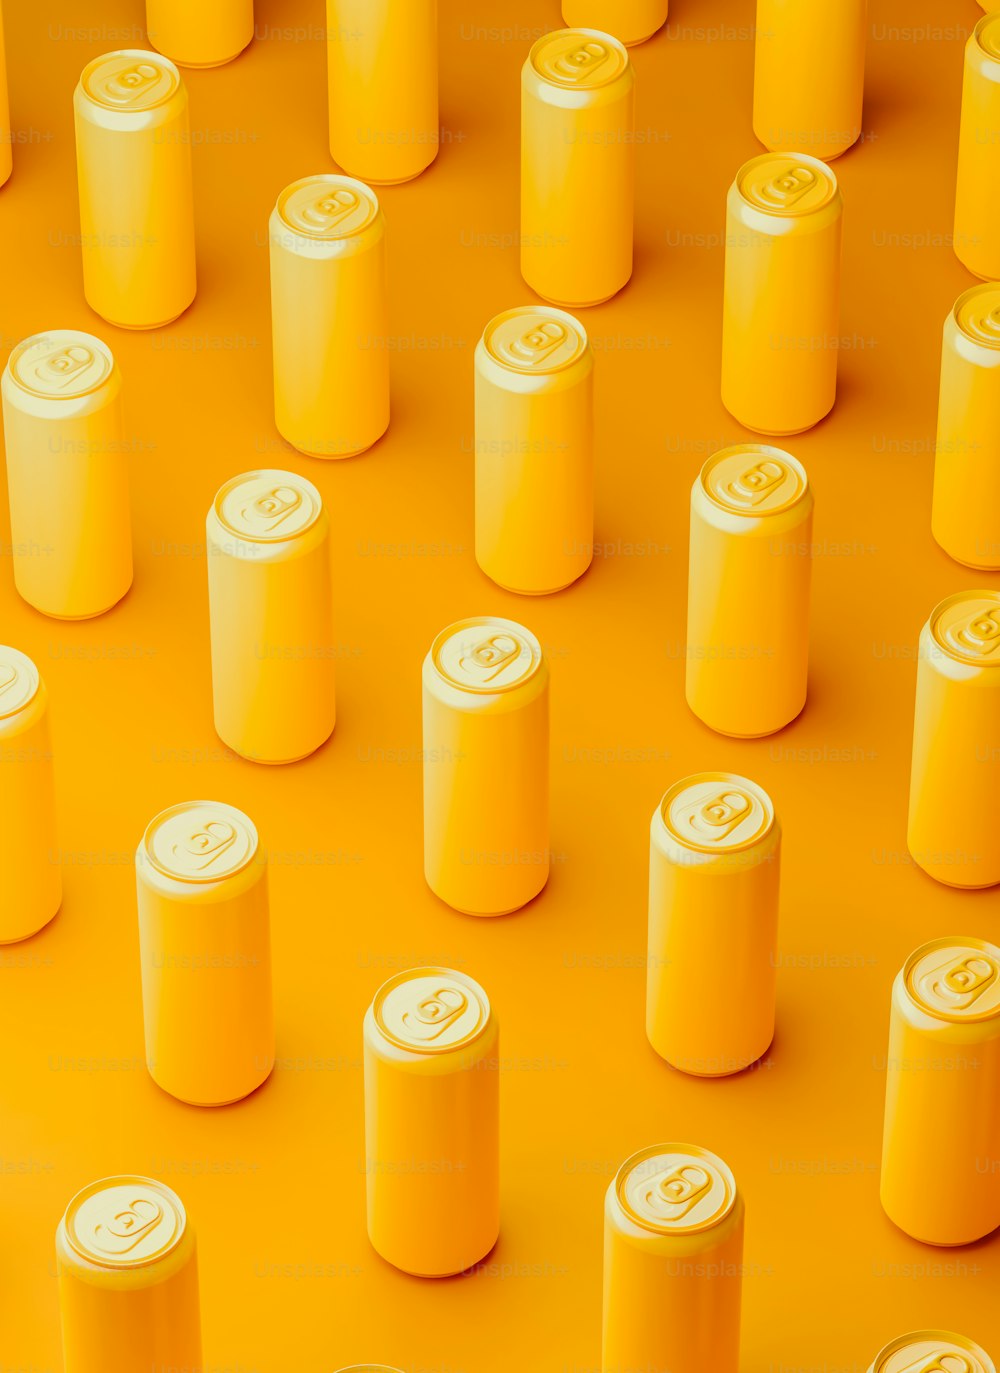 Un gruppo di lattine di soda gialle sedute sopra una superficie gialla